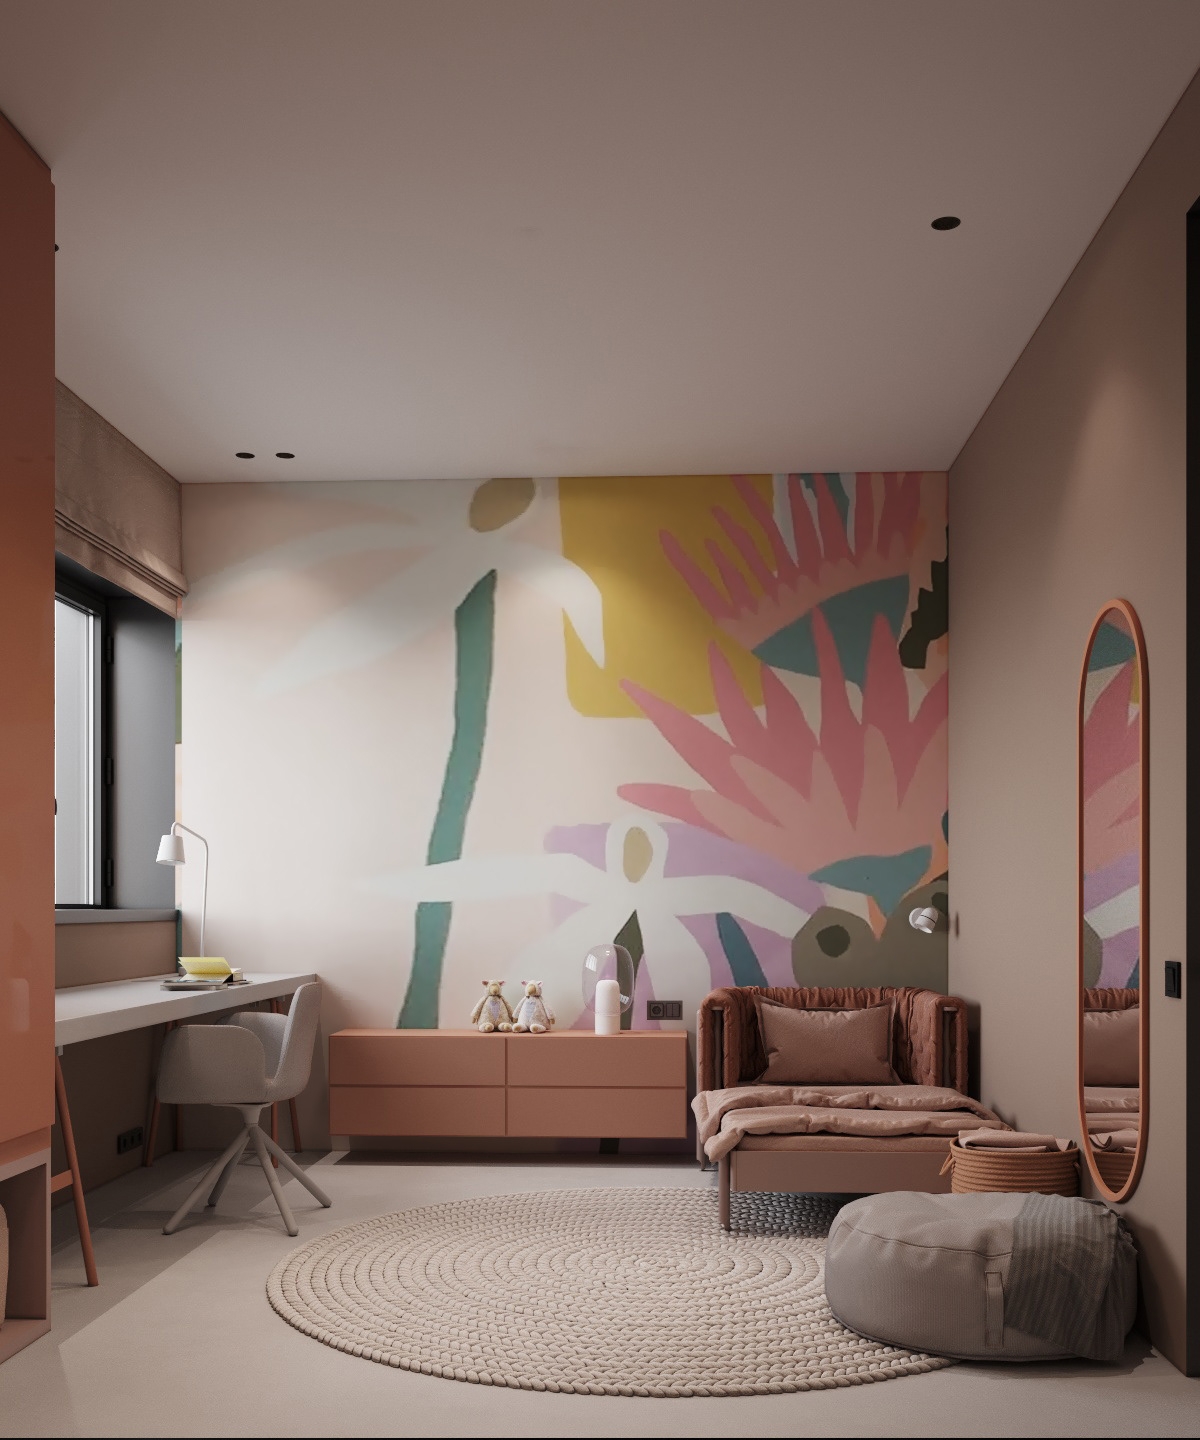 Bức tranh hoa nằm trên tường là chủ đề chính để trang trí phòng ngủ màu hồng